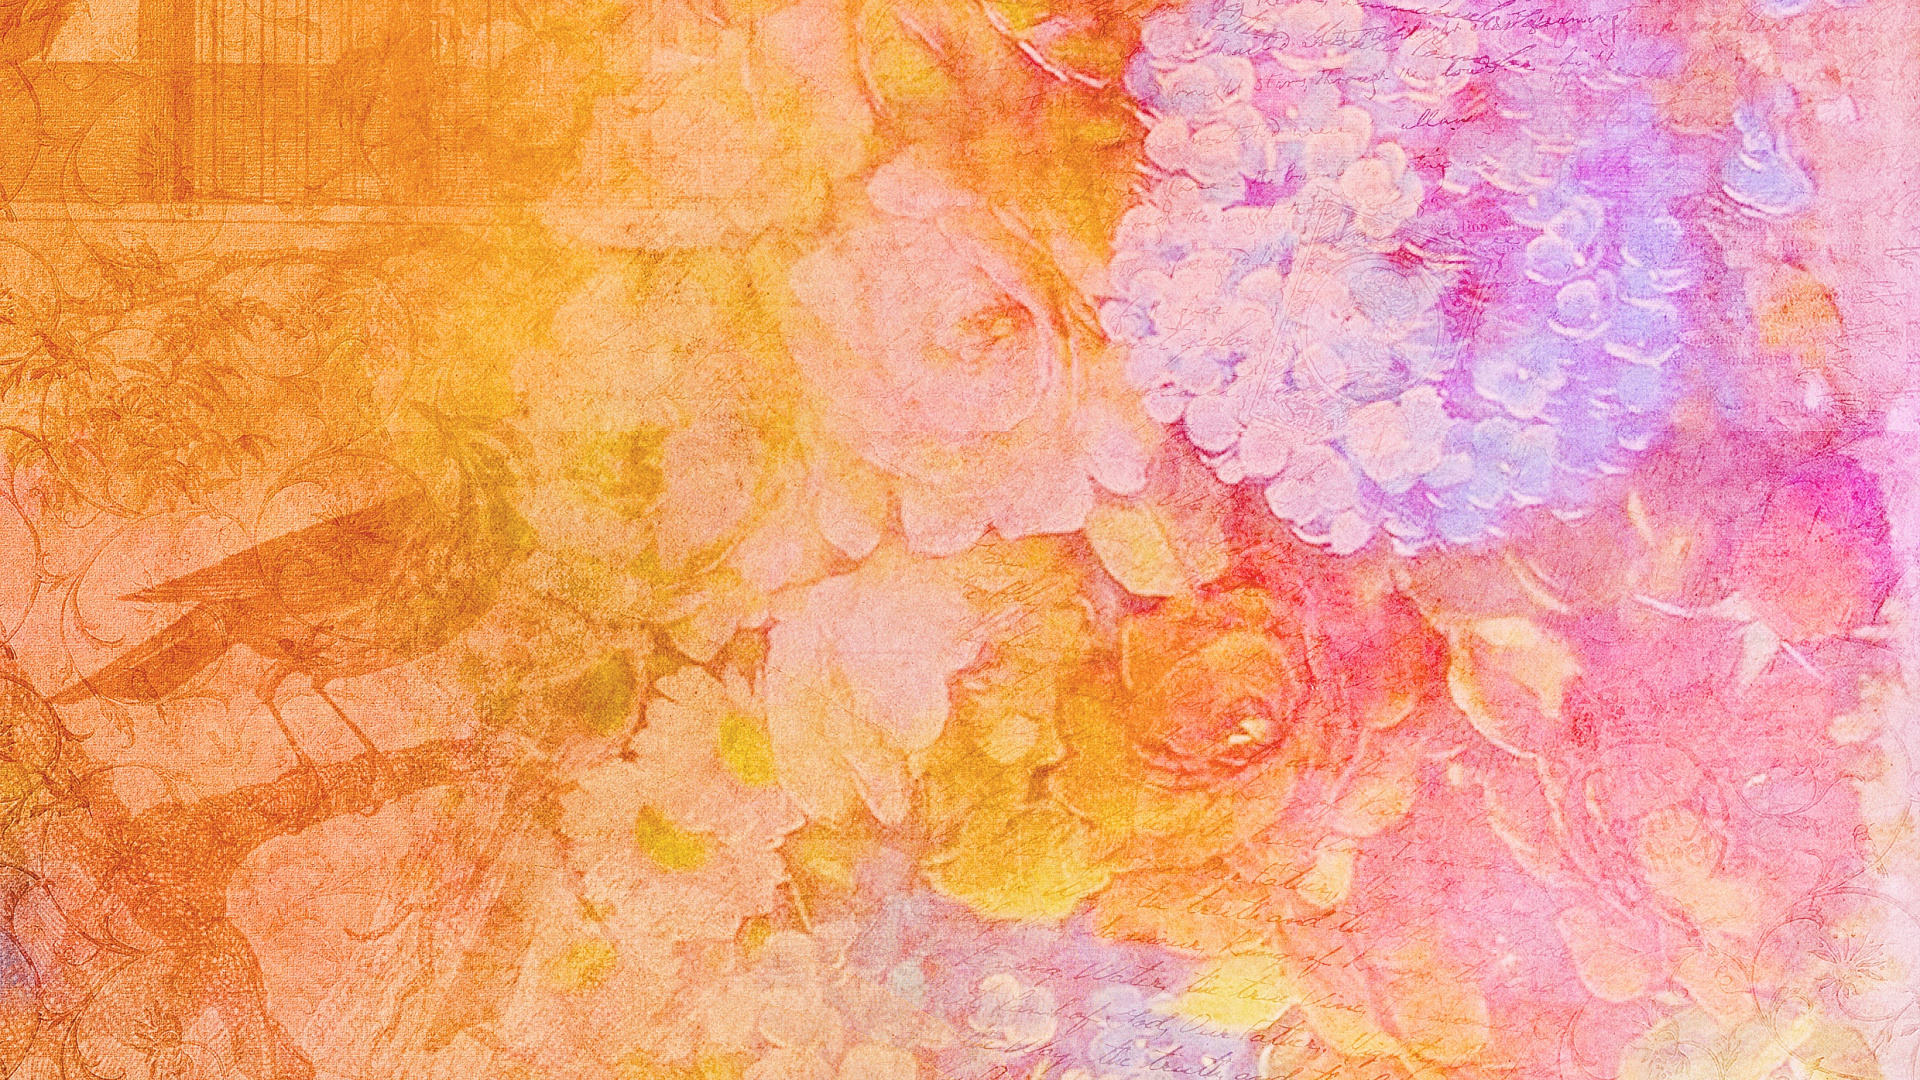 Pintura Abstracta Amarilla Rosa y Morada. Wallpaper in 1920x1080 Resolution